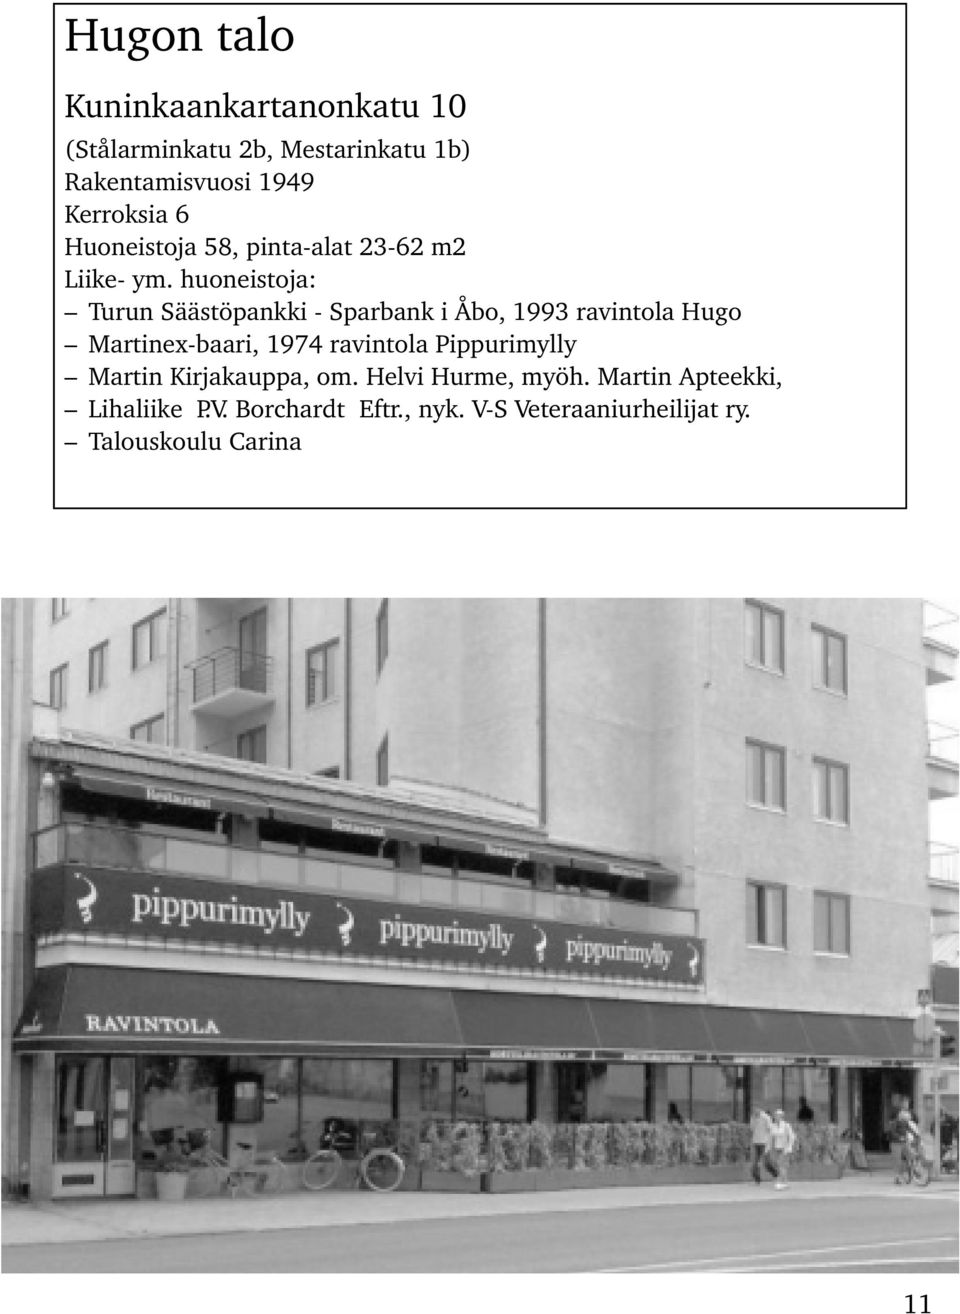 huoneistoja: Turun Säästöpankki - Sparbank i Åbo, 1993 ravintola Hugo Martinex-baari, 1974 ravintola